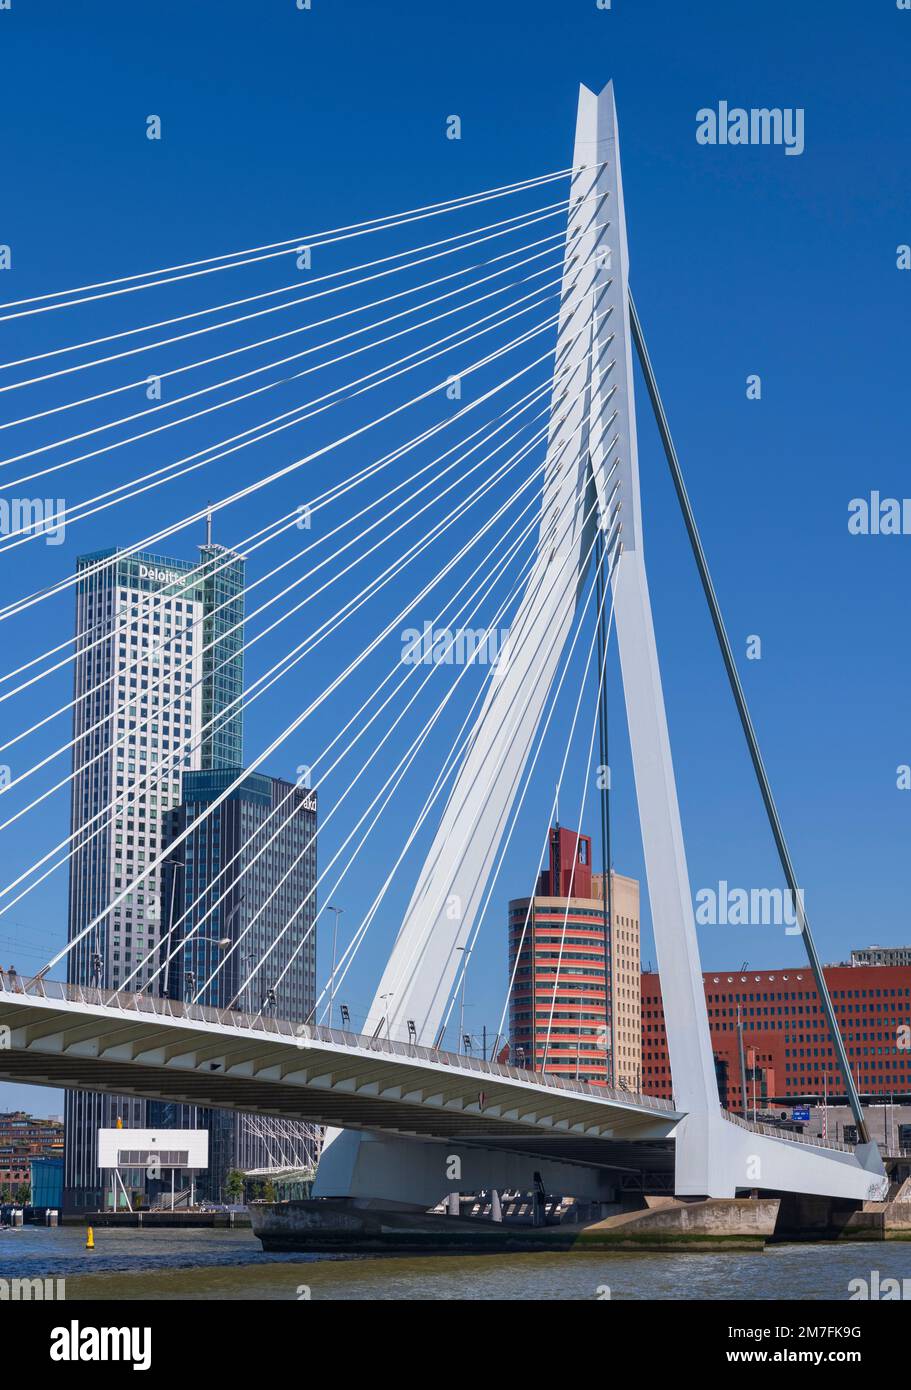 Hollande, Rotterdam, vue depuis le dessous de l'Eramusbrug ou du pont Erasmus sur la rivière Nieuwe Maas avec le Maastoren qui est le deuxième plus haut bâtiment de Hollande en arrière-plan. Banque D'Images